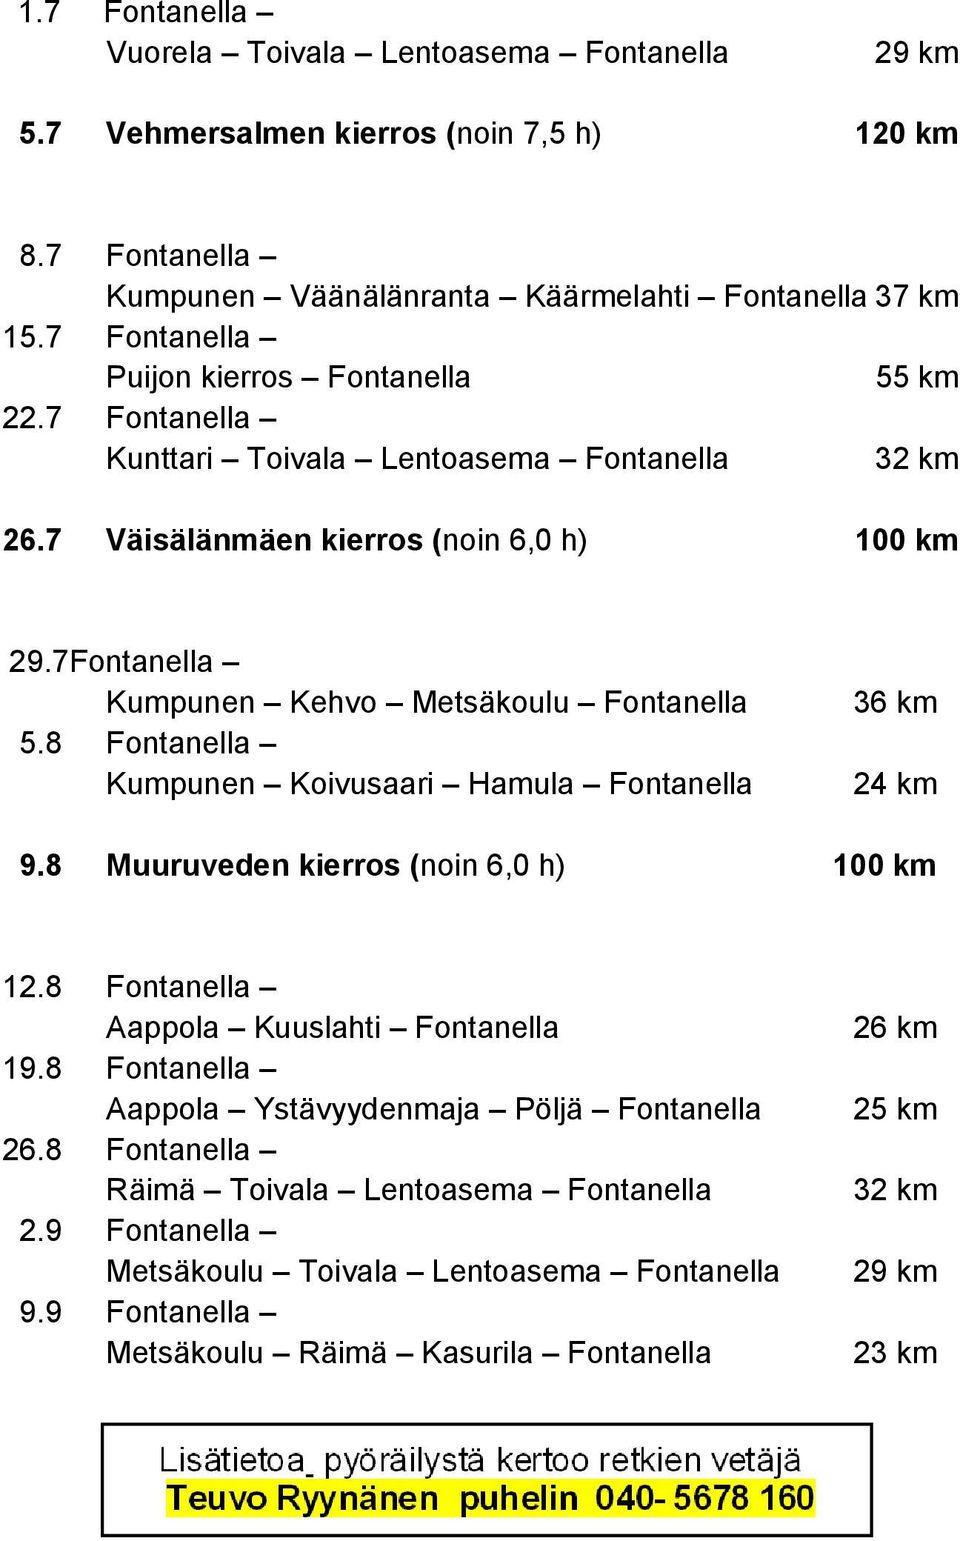 7Fontanella Kumpunen Kehvo Metsäkoulu Fontanella 5.8 Fontanella Kumpunen Koivusaari Hamula Fontanella 36 km 24 km 9.8 Muuruveden kierros (noin 6,0 h) 100 km 12.